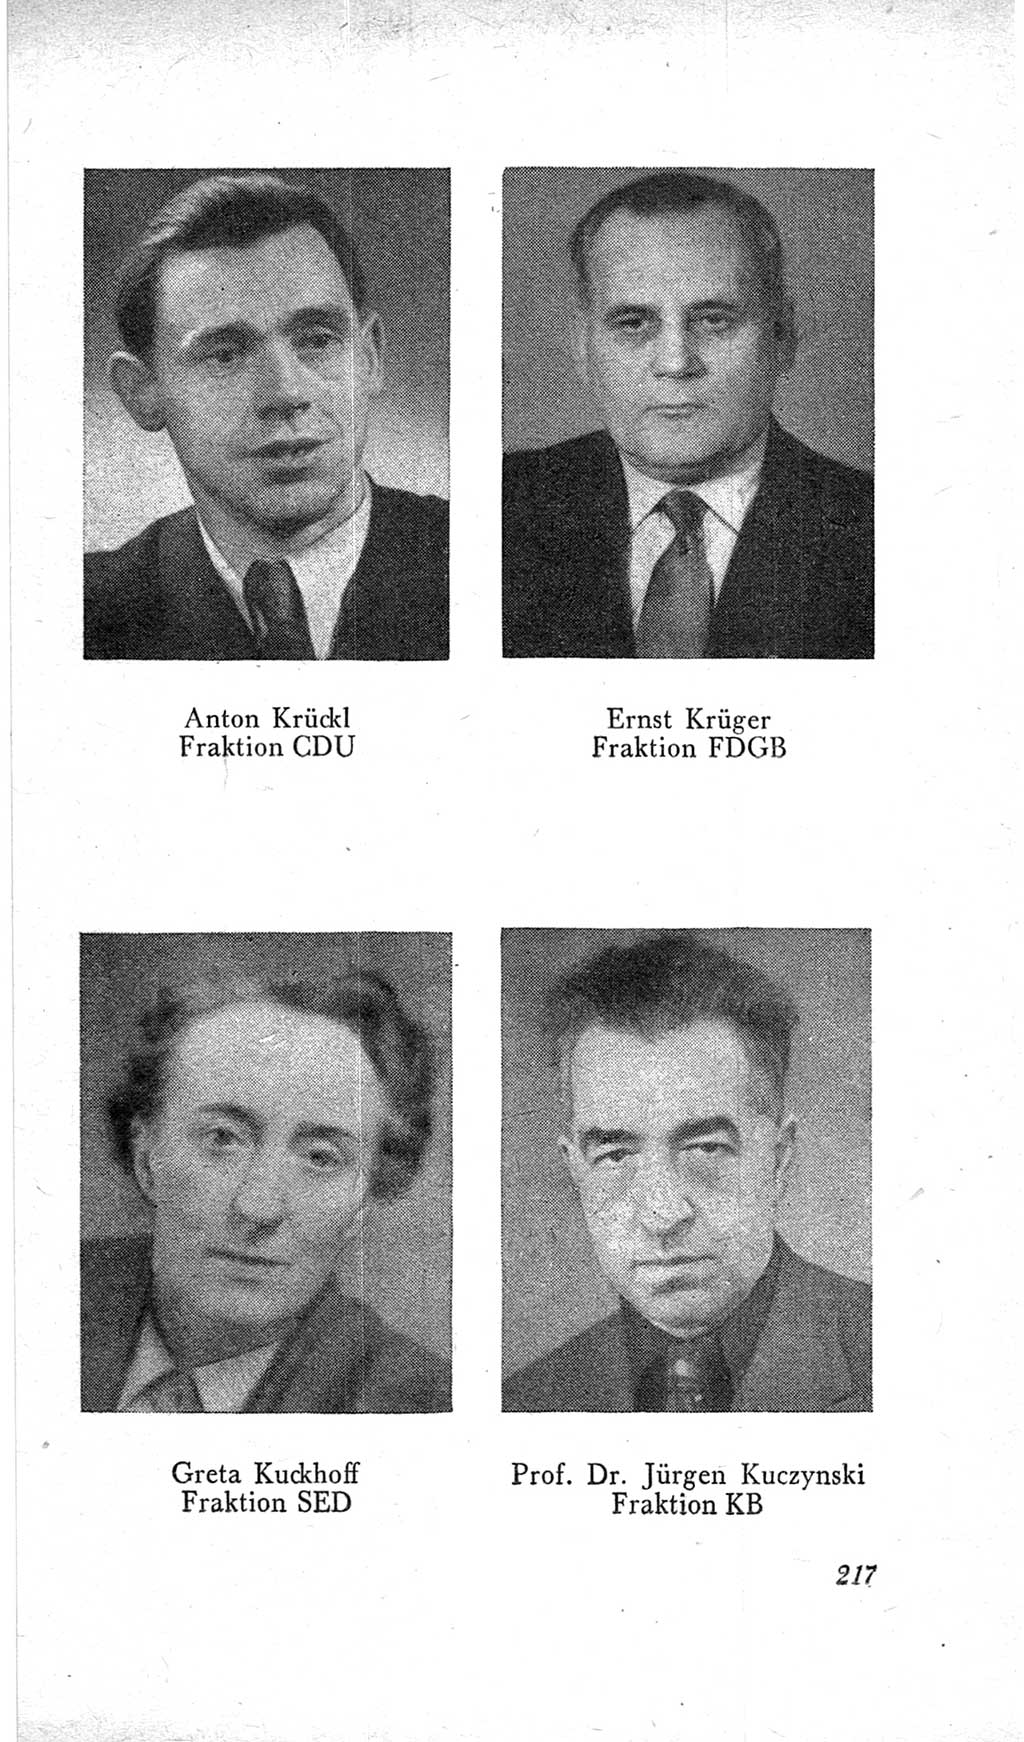 Handbuch der Volkskammer (VK) der Deutschen Demokratischen Republik (DDR), 2. Wahlperiode 1954-1958, Seite 217 (Hdb. VK. DDR, 2. WP. 1954-1958, S. 217)